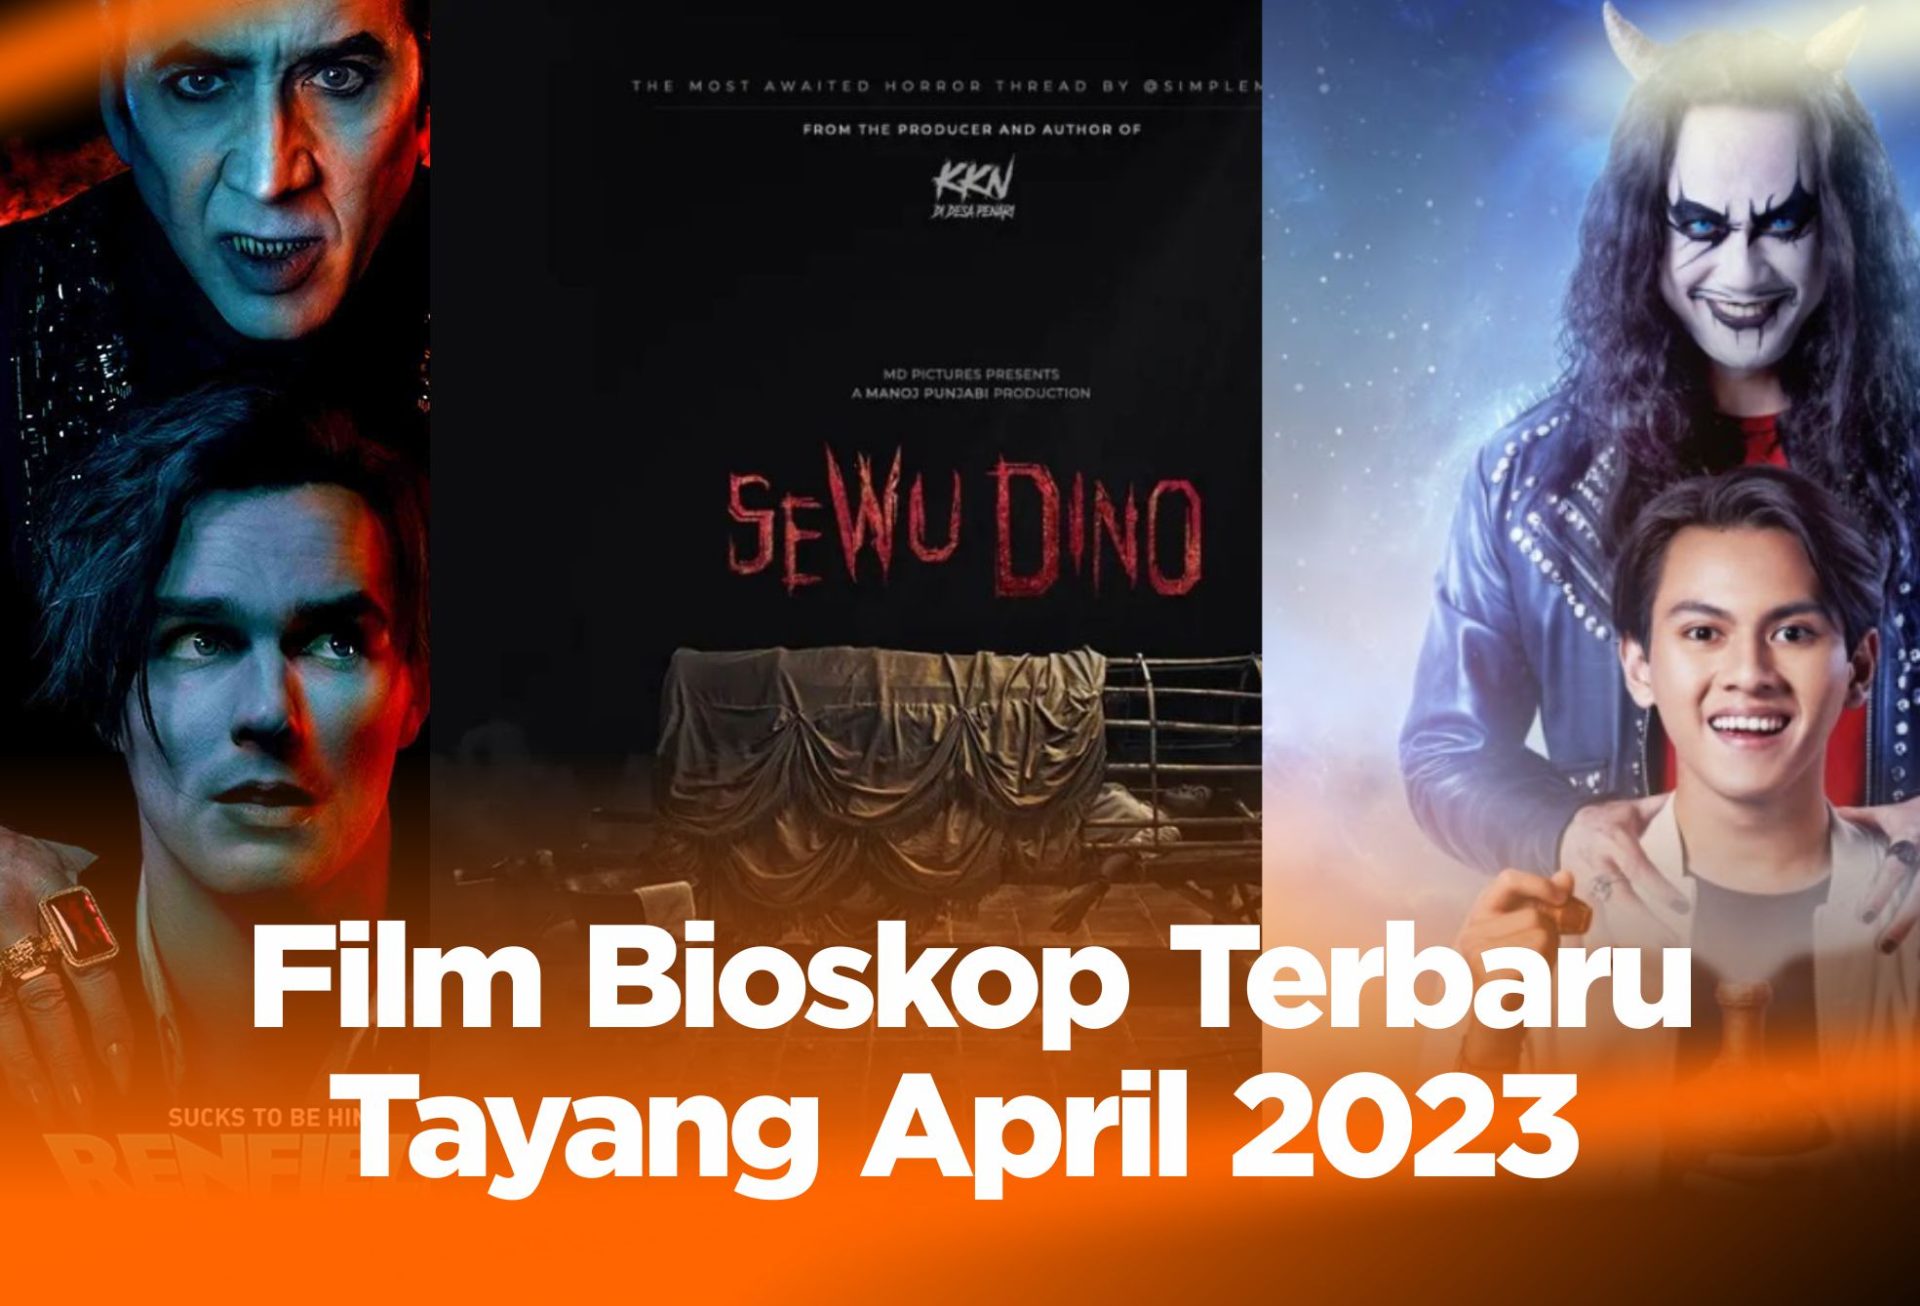 Film Bioskop Terbaru Tayang April 2023